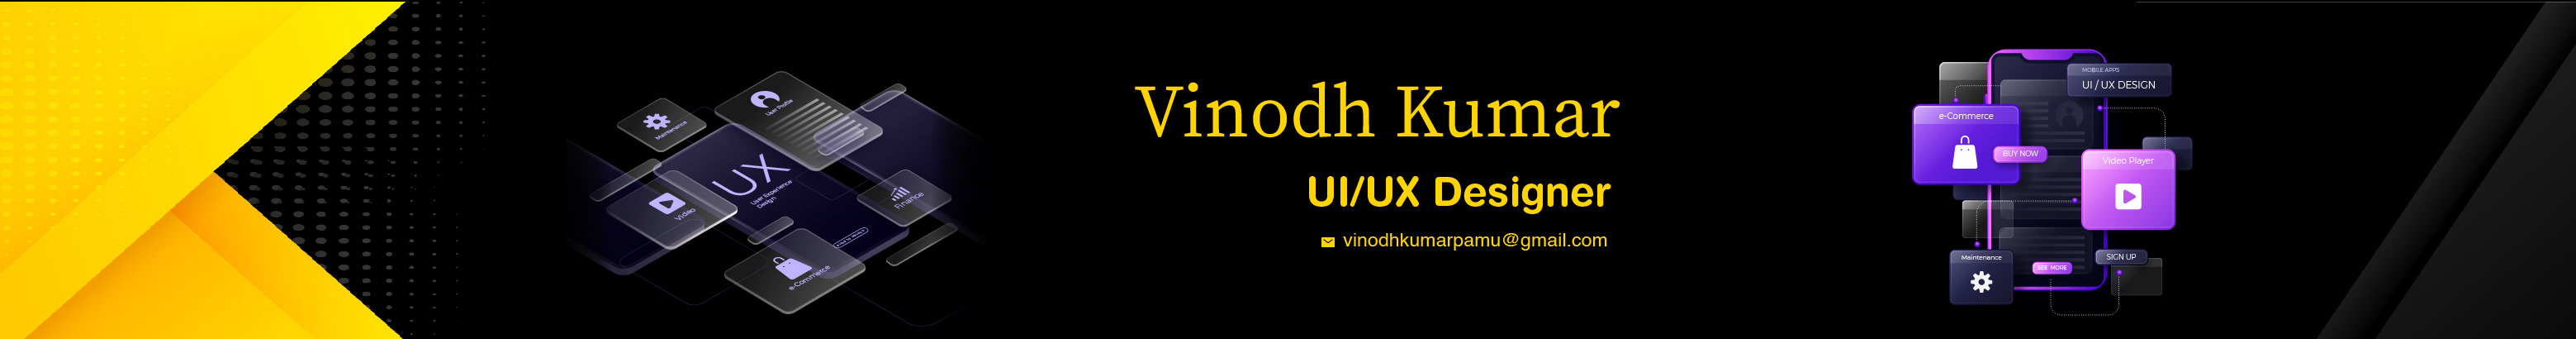 Vinodh Kumar's profile banner